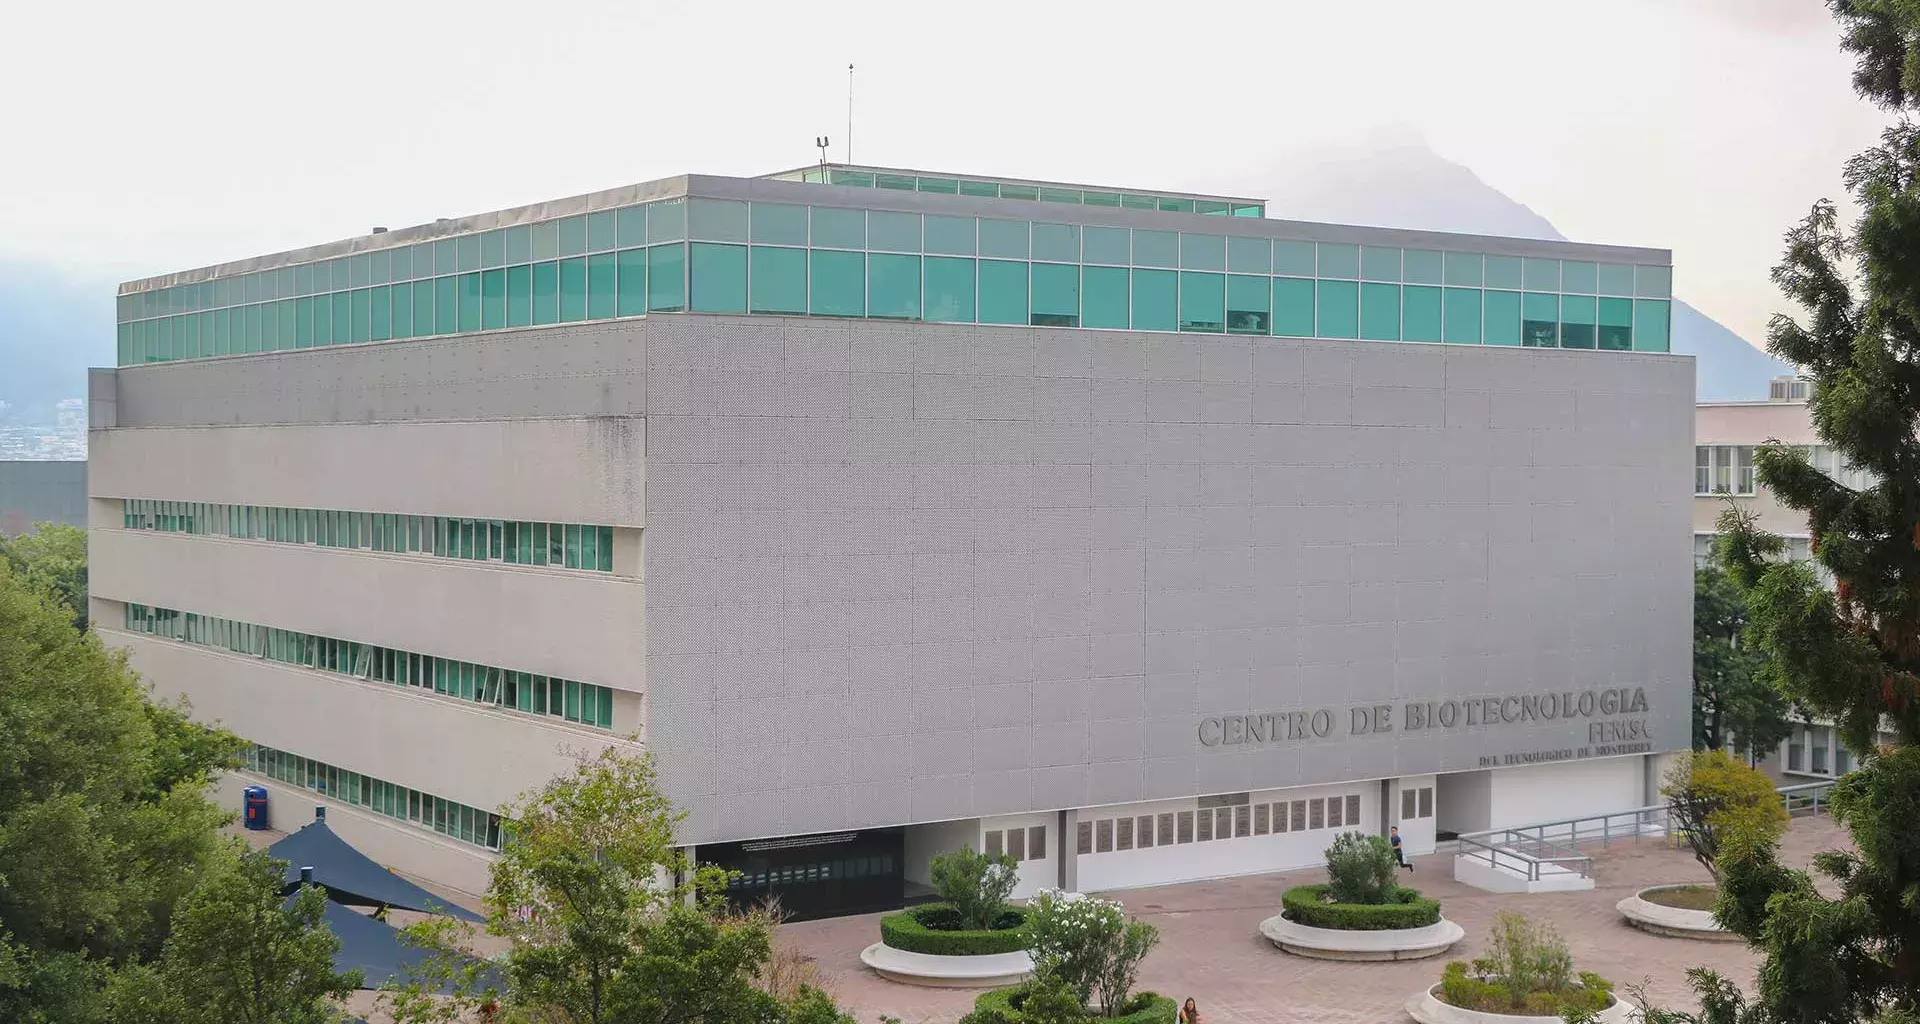 Centro de Biotecnología FEMSA